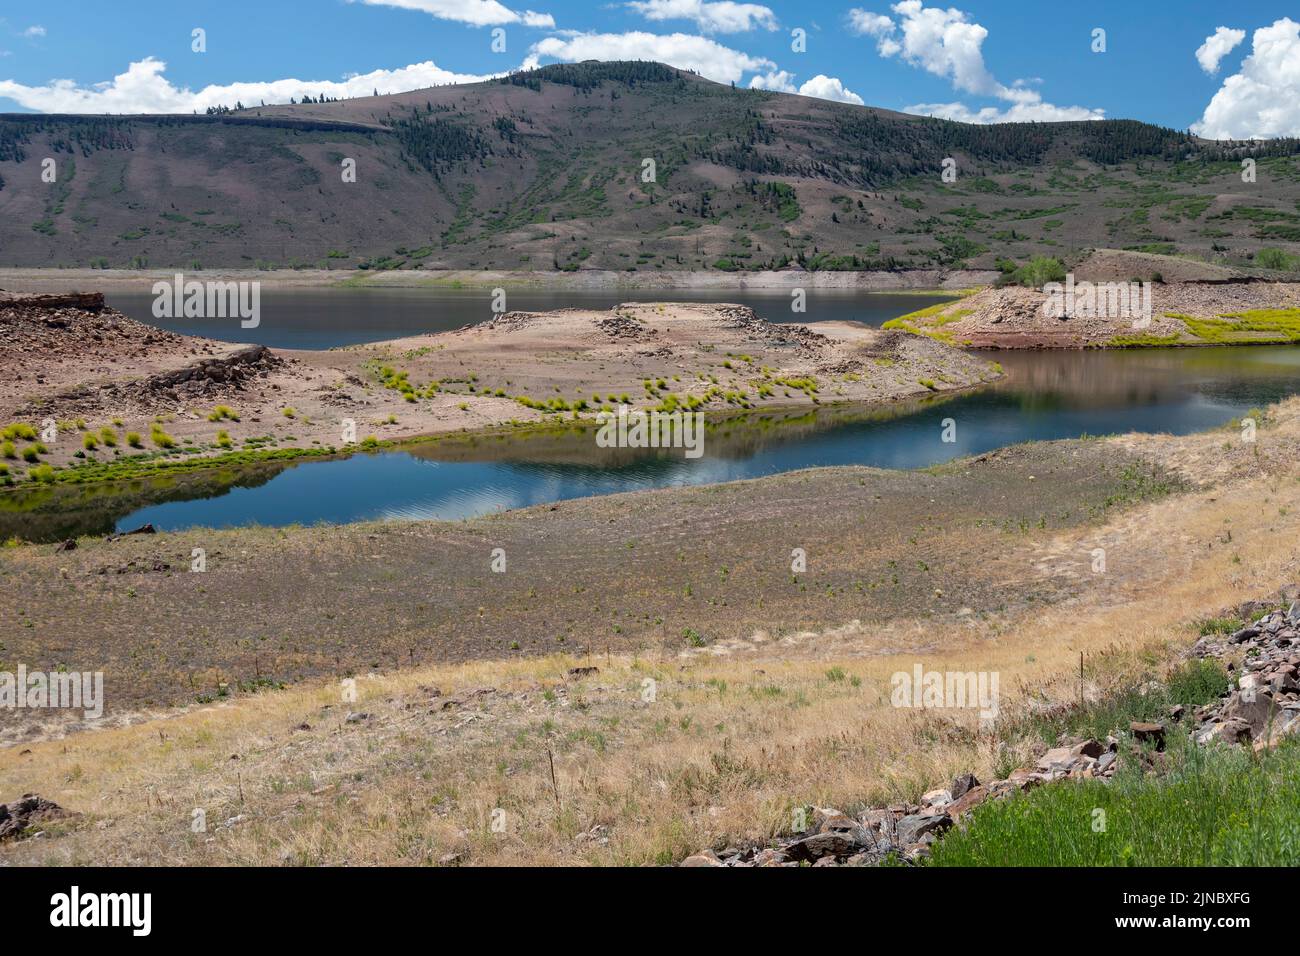 Gunnison, Colorado - die Dürre, die den amerikanischen Westen betrifft, hat den Wasserstand auf dem Blue Mesa Reservoir in Curecanti National recrea dramatisch gesenkt Stockfoto